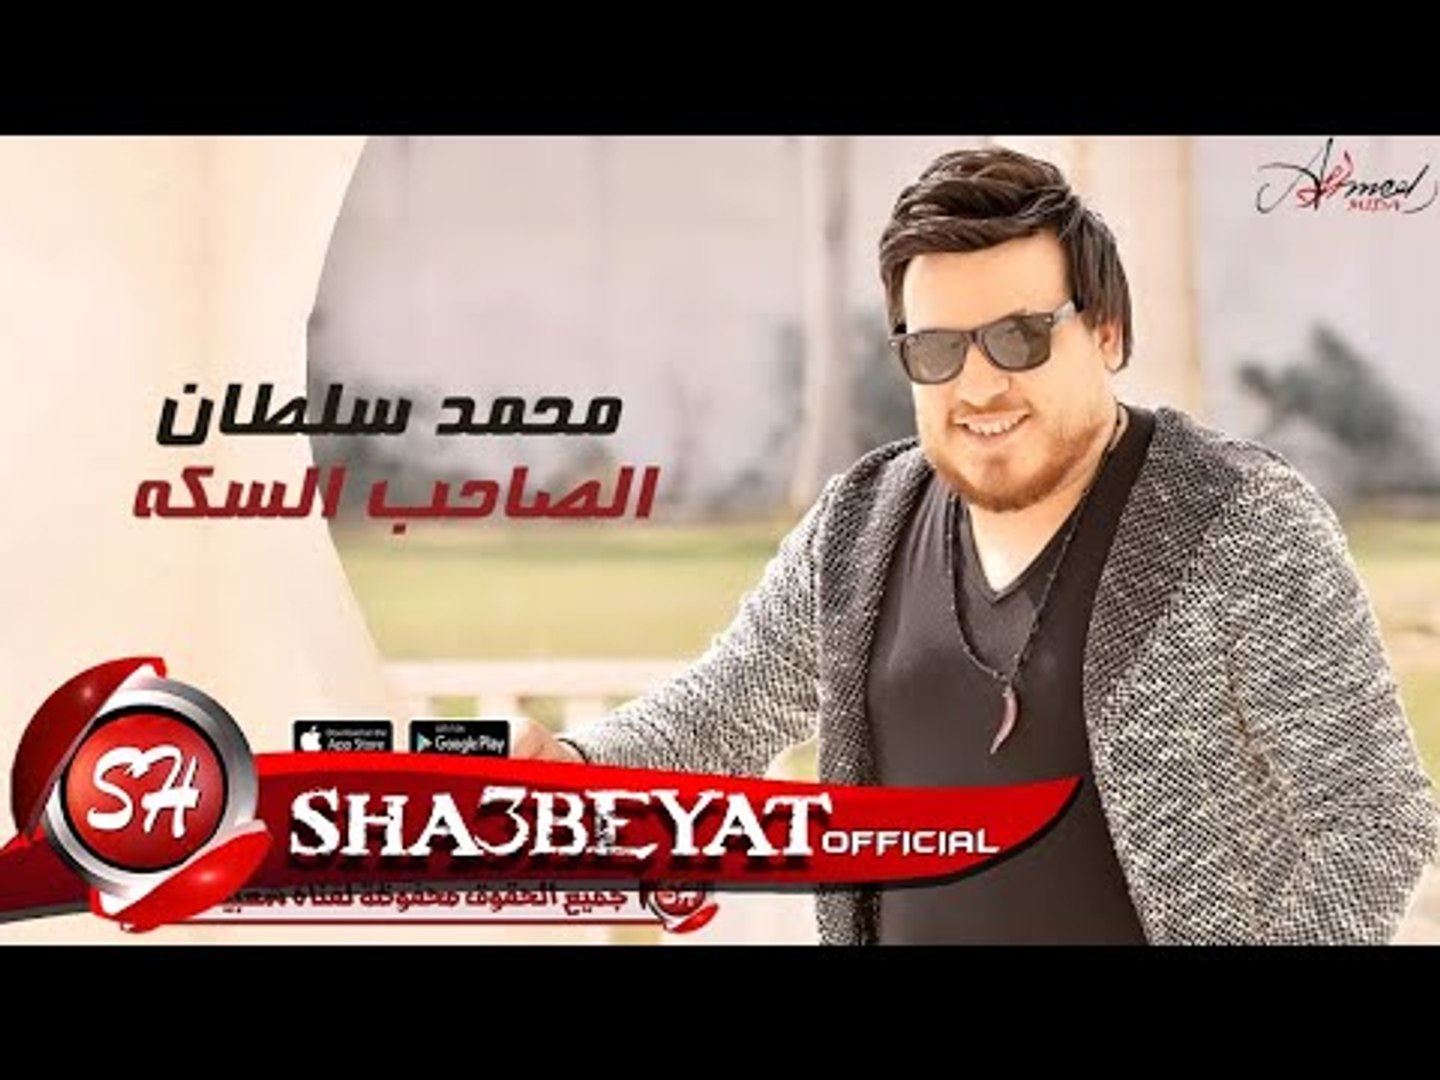 محمد سلطان الصاحب السكه اغنية جديدة 2017 حصريا على شعبيات Mohamed Soltan  Elsa7eb Elsaka - video Dailymotion